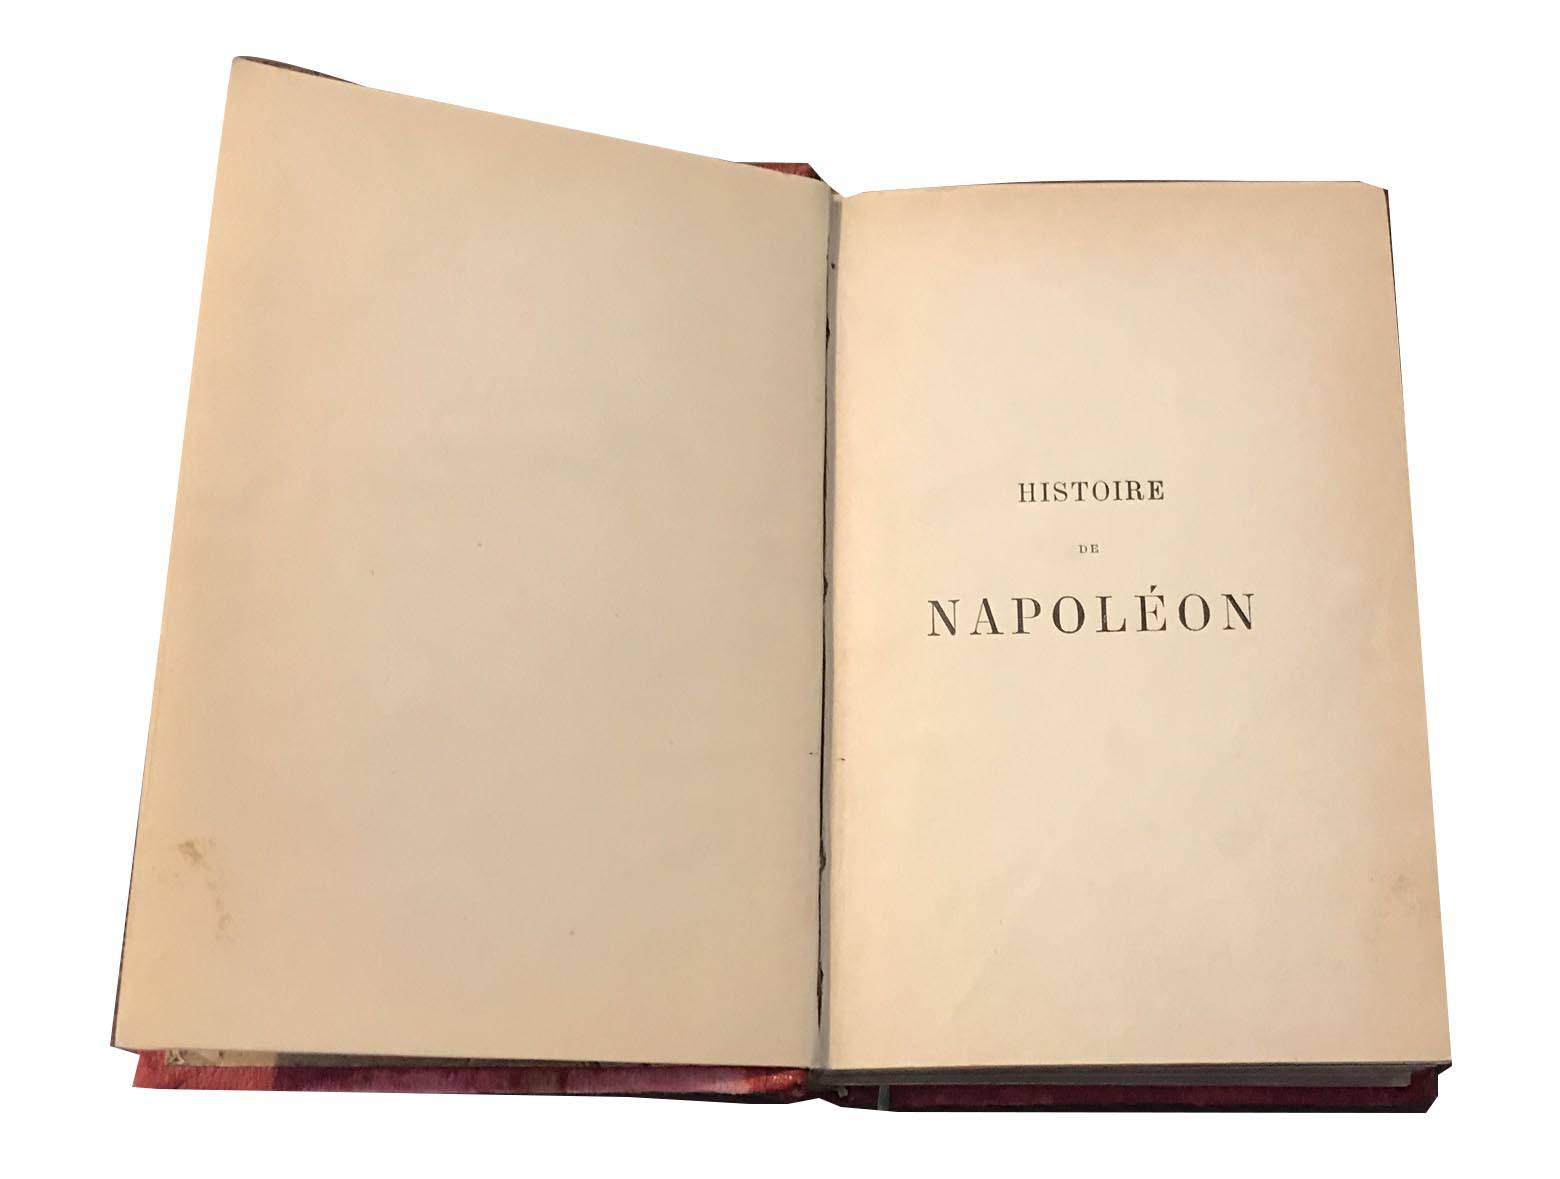 HISTOIRE DE NAPOLEON, bY Desire LACROIX